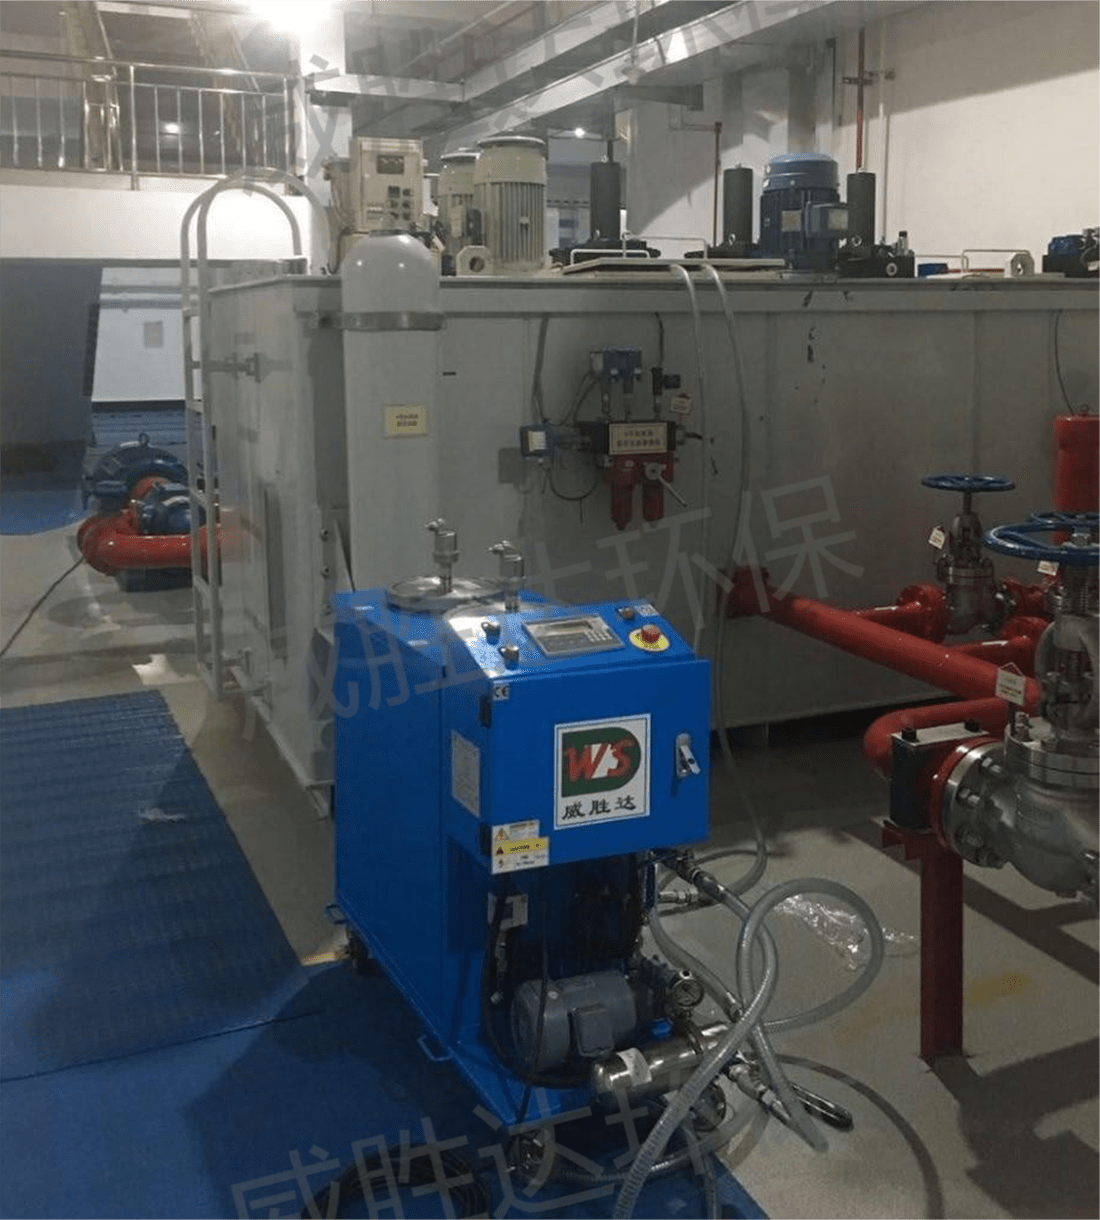 Electrostatic man purifier amfani da turbine mai tsarin